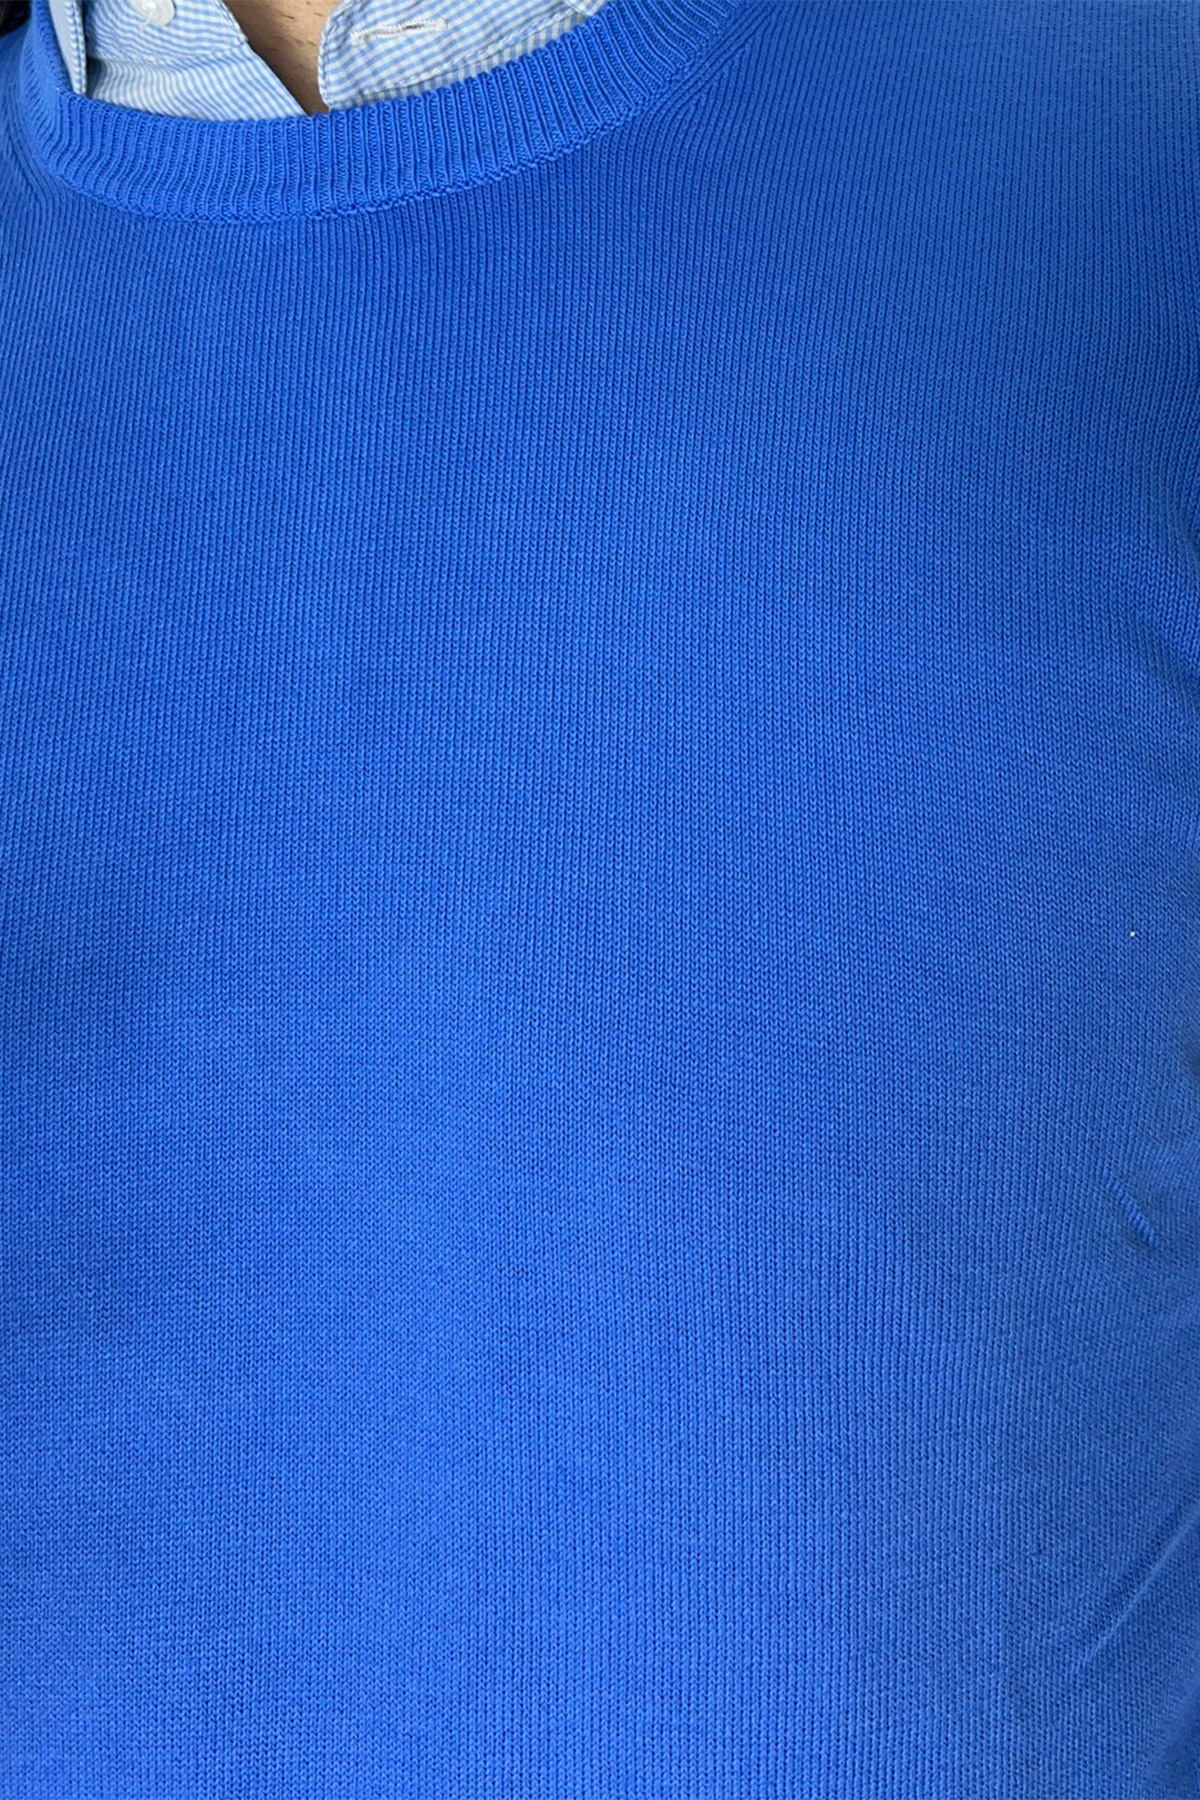 Gilet da uomo azzurro 100% cotone di filo finezza 12 tinta unita